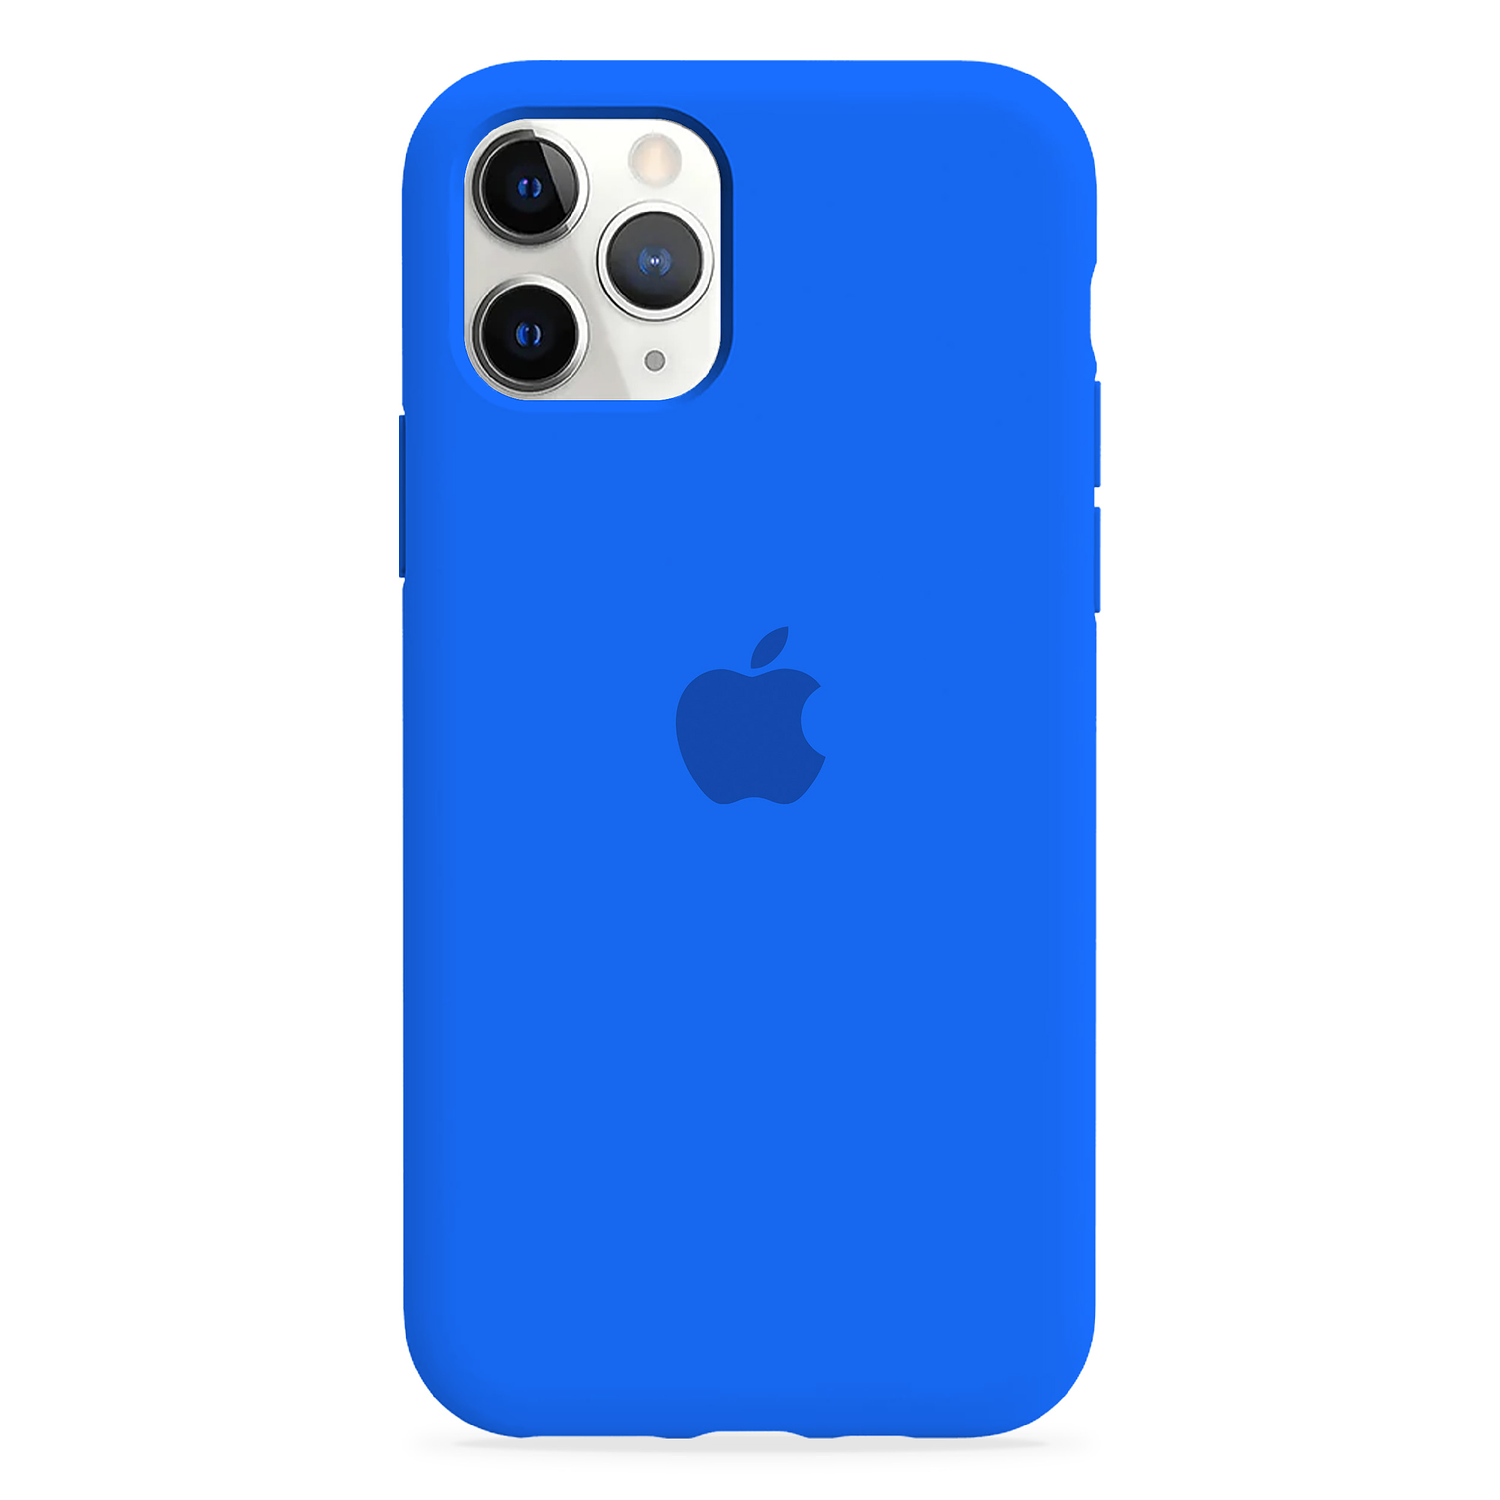 Carcasa de Silicona - iPhone 11 Pro Max 10